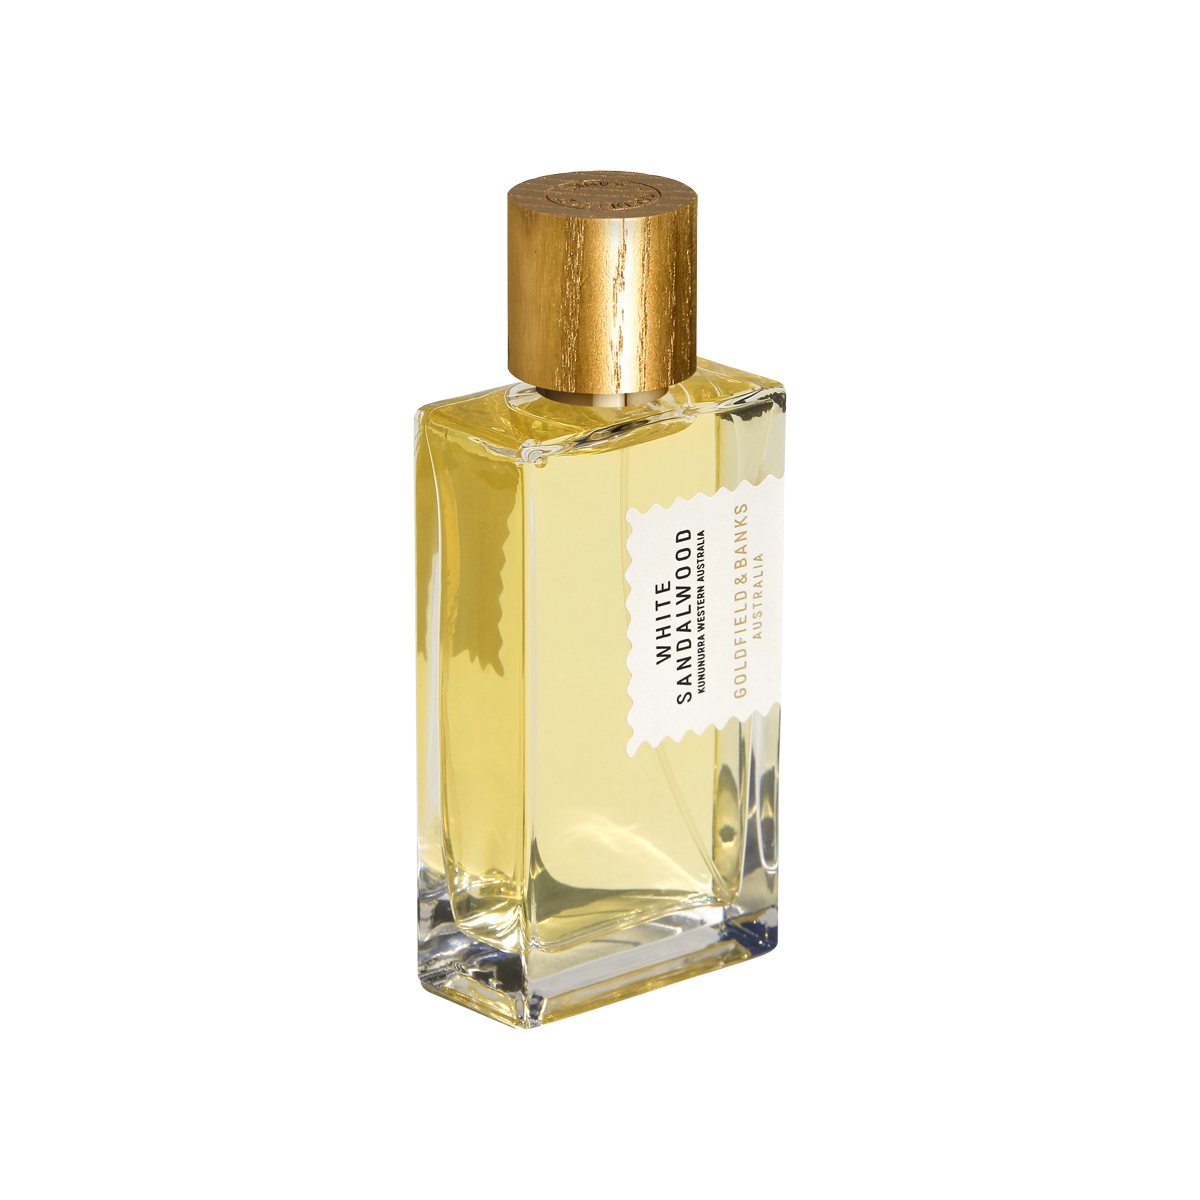 Goldfield & Banks - White Sandalwood Eau de Parfum